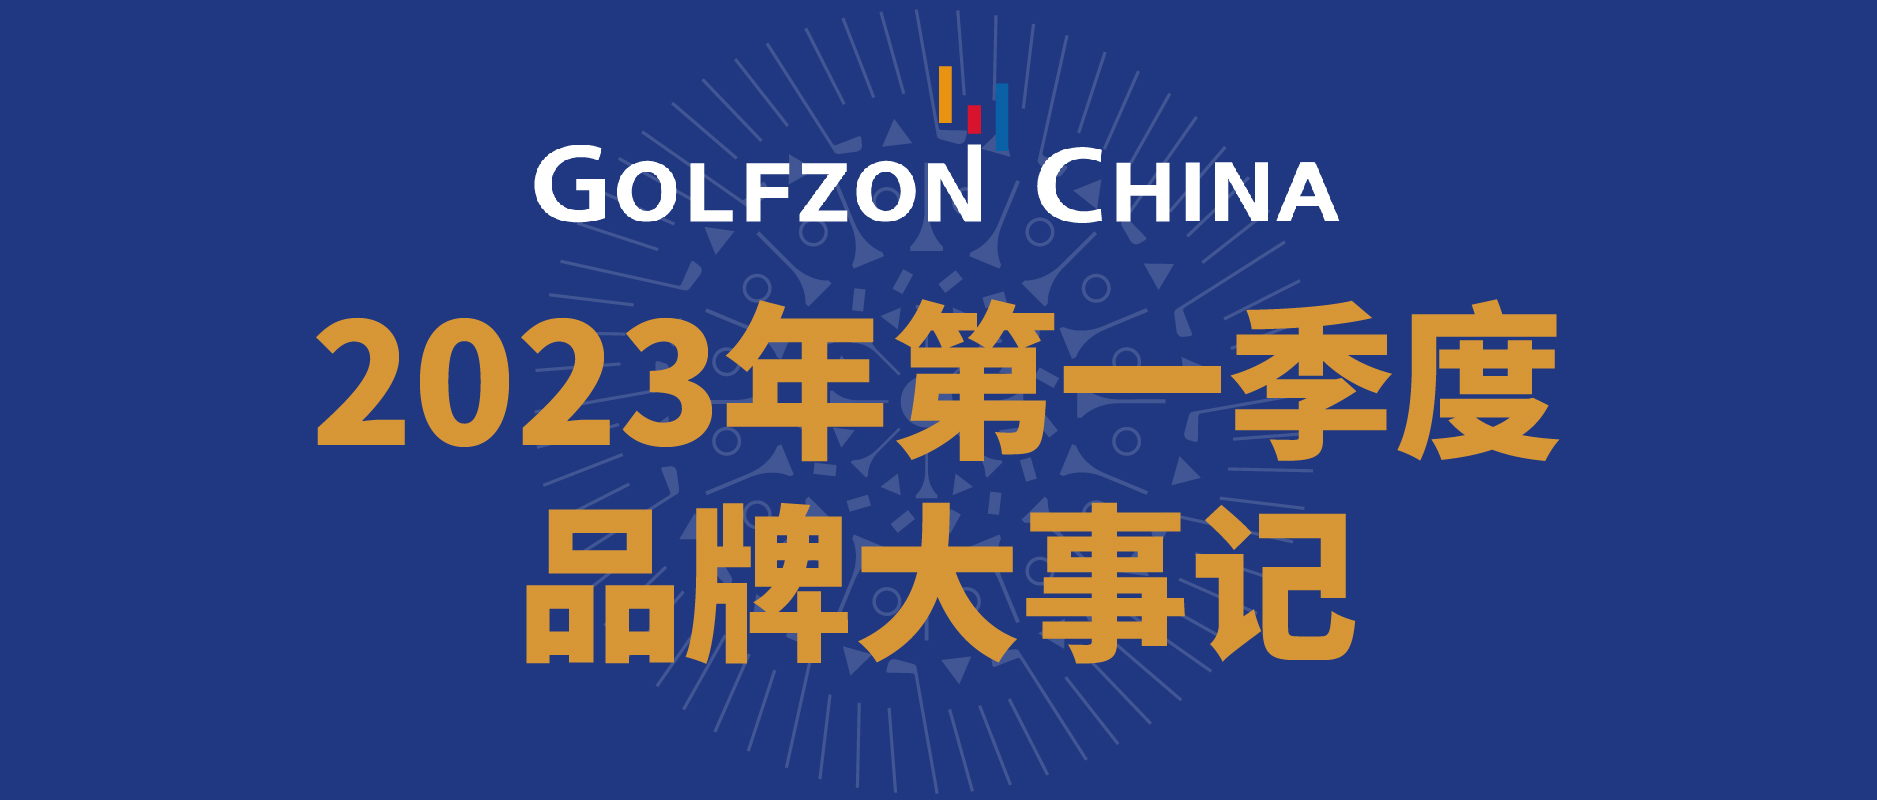 高尔夫尊中国2023年第一季度品牌大事记